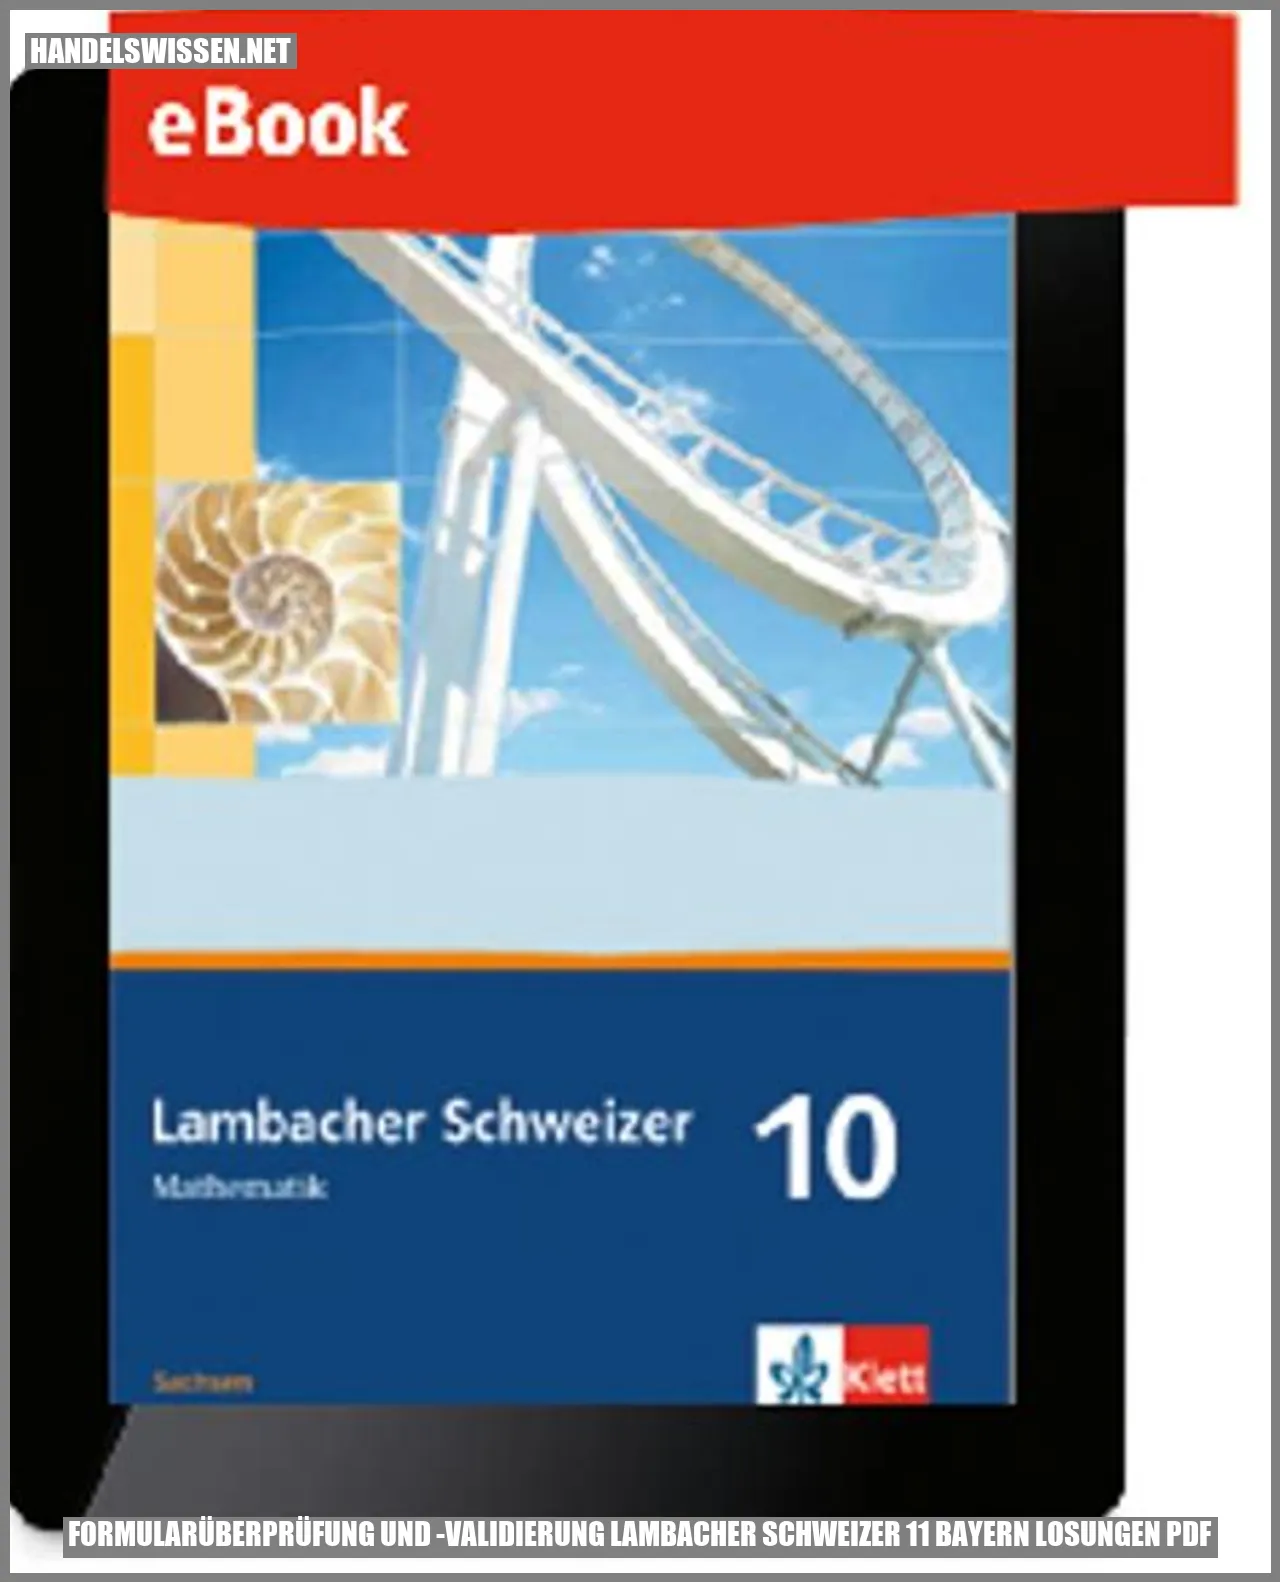 Formularüberprüfung und -validierung lambacher schweizer 11 bayern losungen pdf